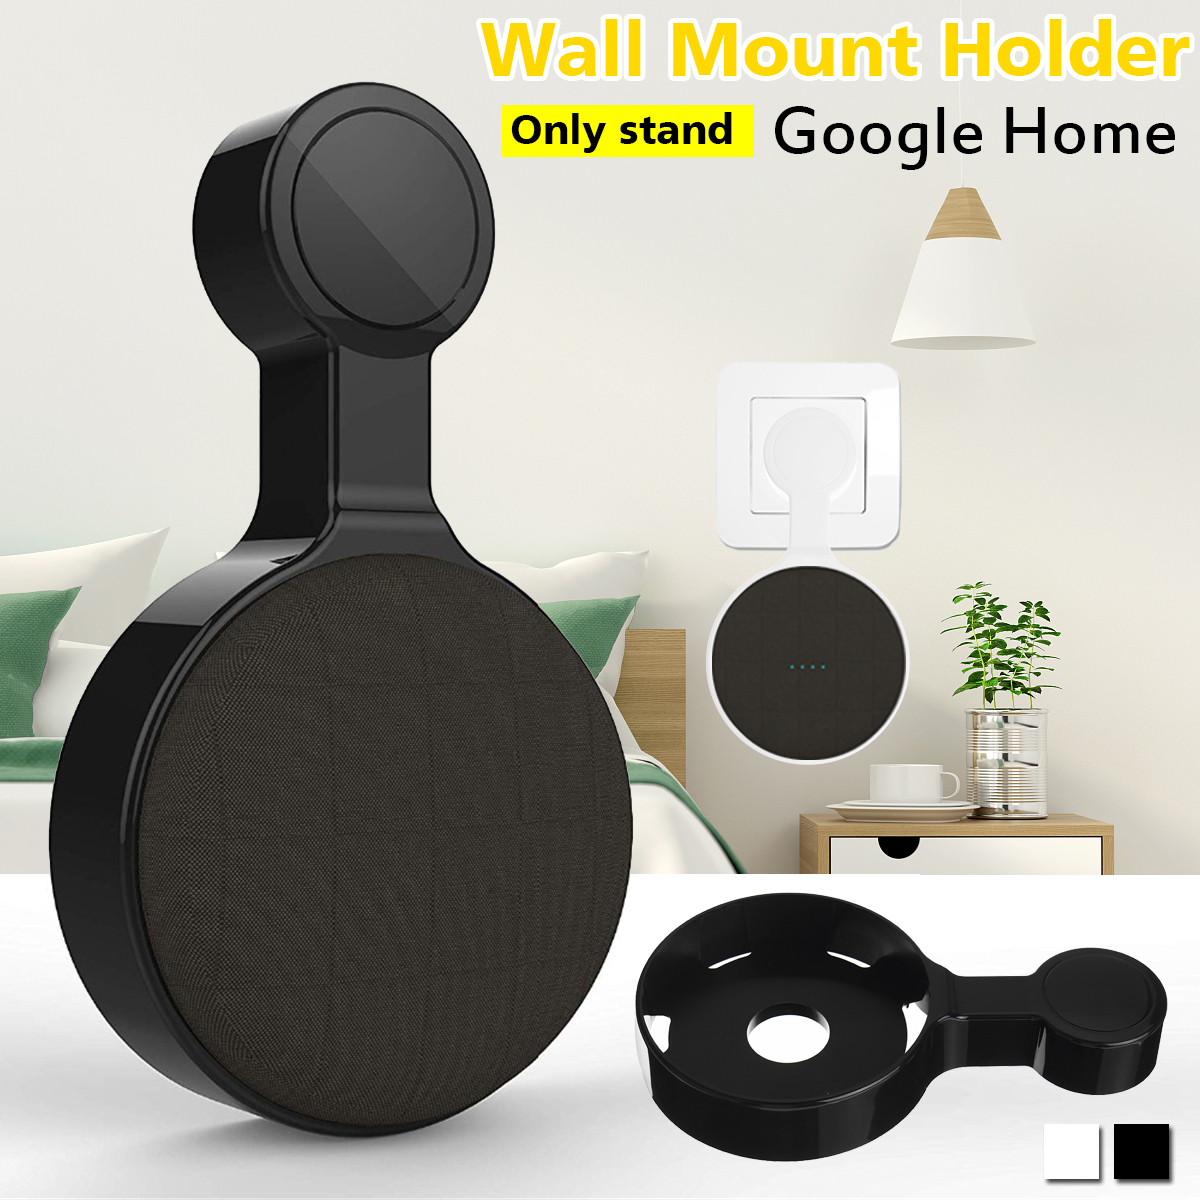 Portable-Wall-Mount-Holder-Plastic-Speaker-Stand-for-Google-Home-Speaker-1675631-1